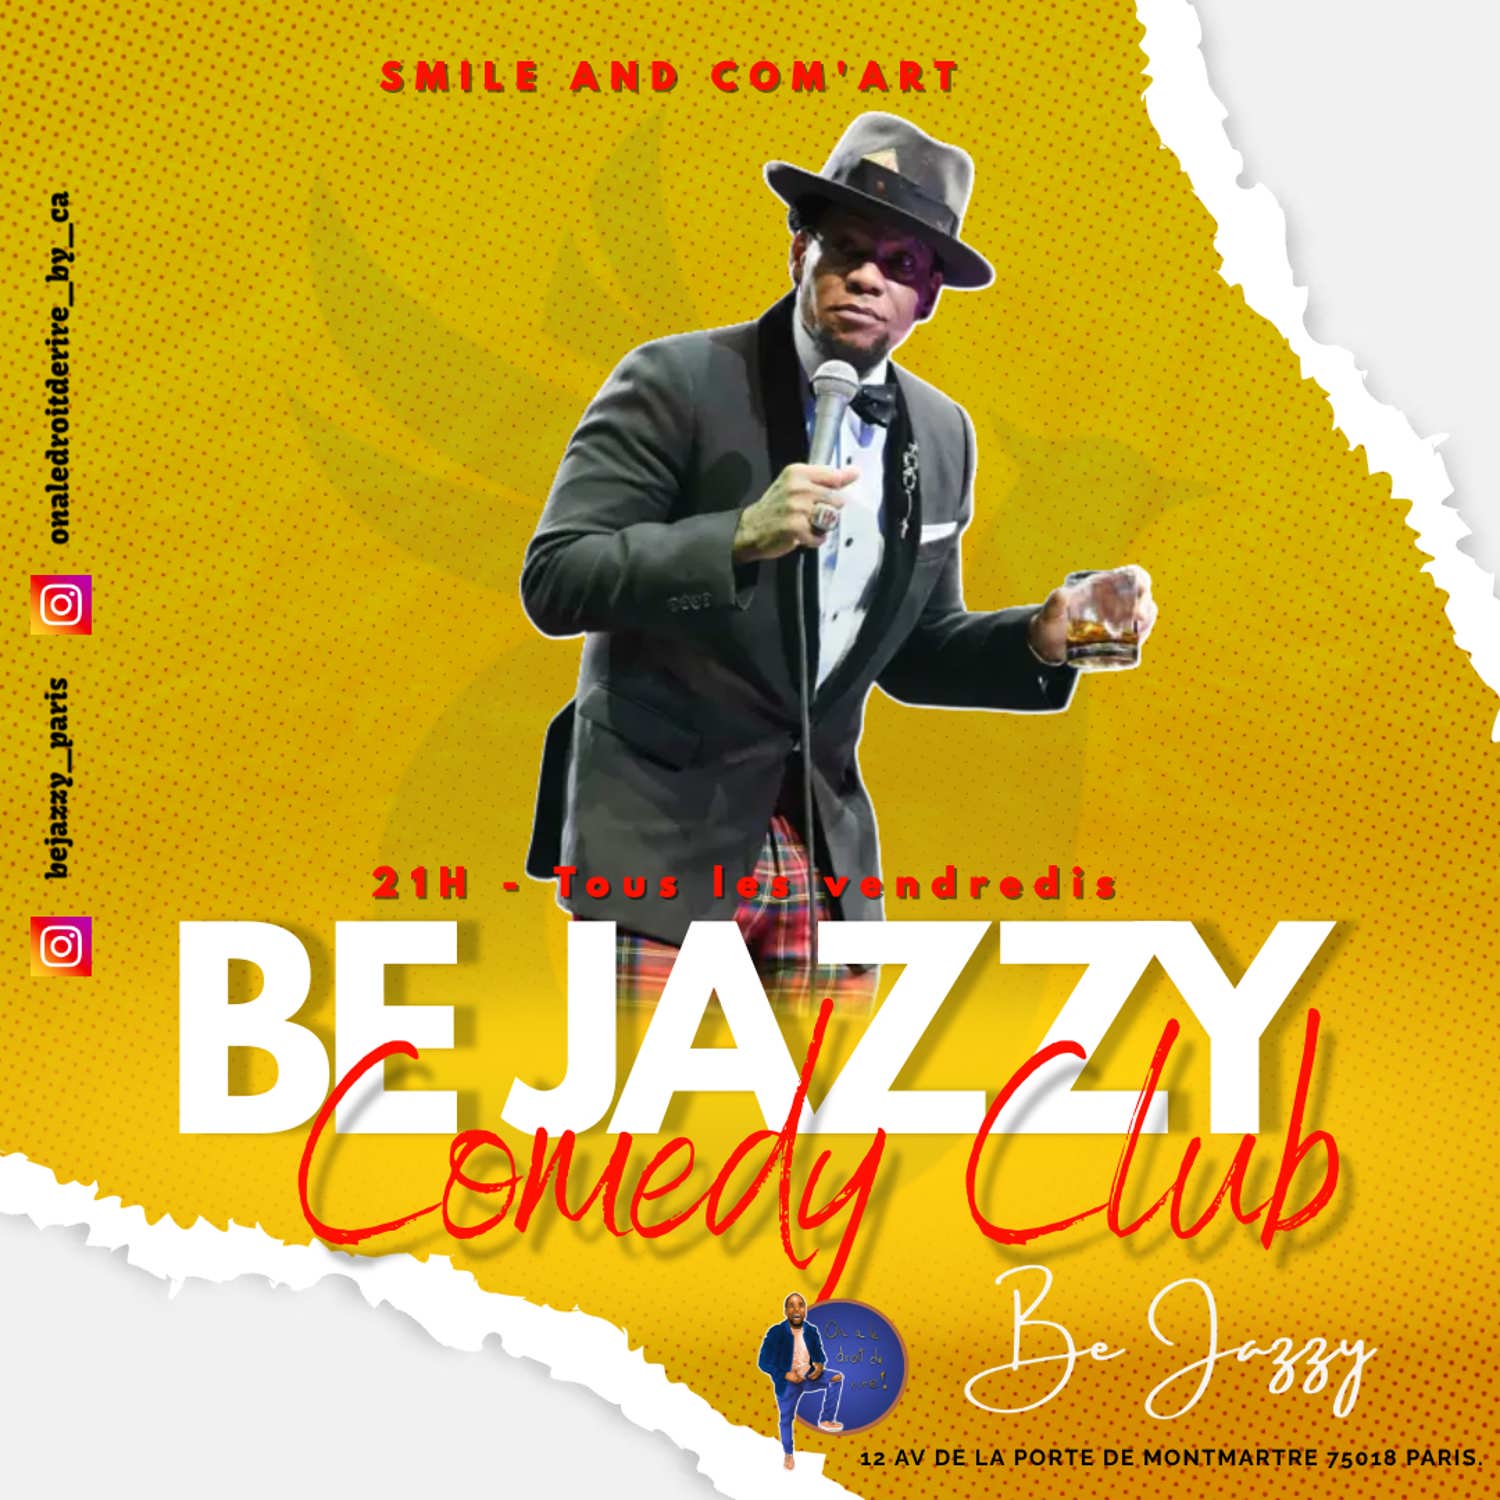 Be Jazzy Comedy Club